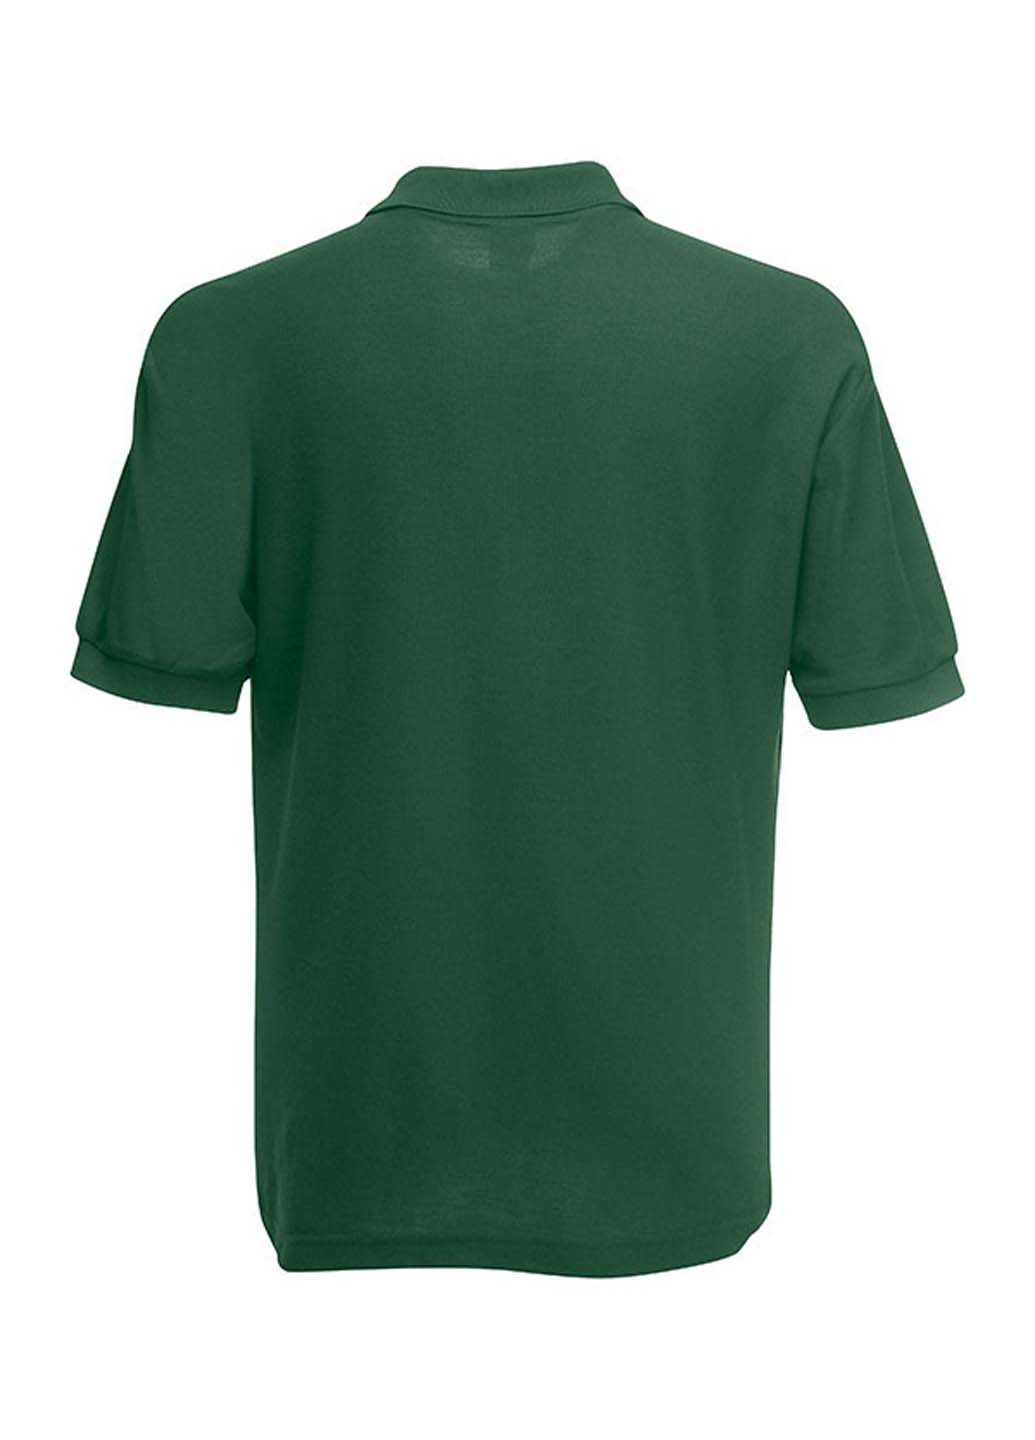 Темно-зеленая детская футболка-поло для мальчика Fruit of the Loom